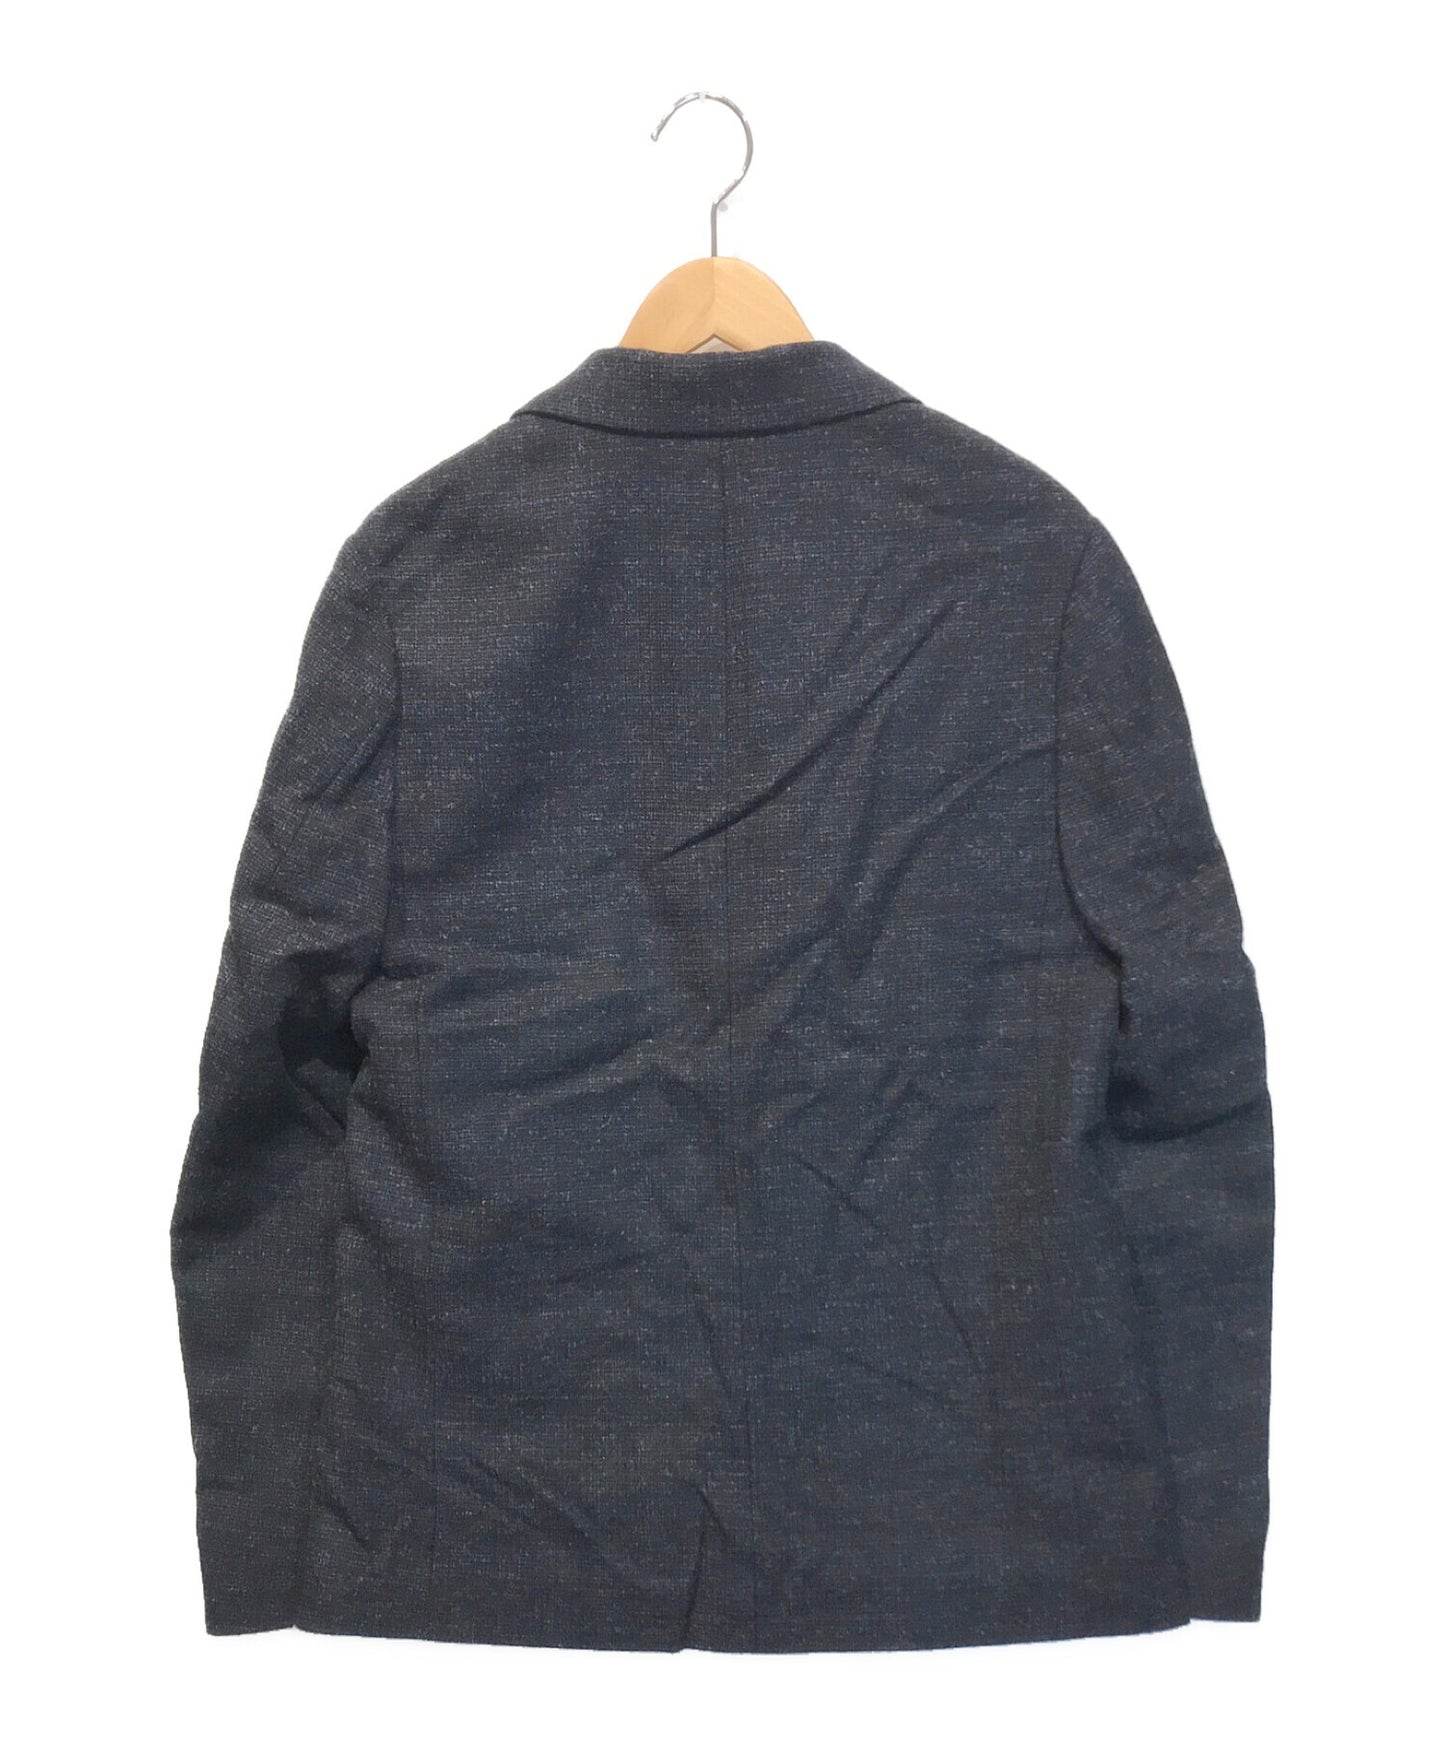 卧底羊毛量身定制的外套UCT4101-2